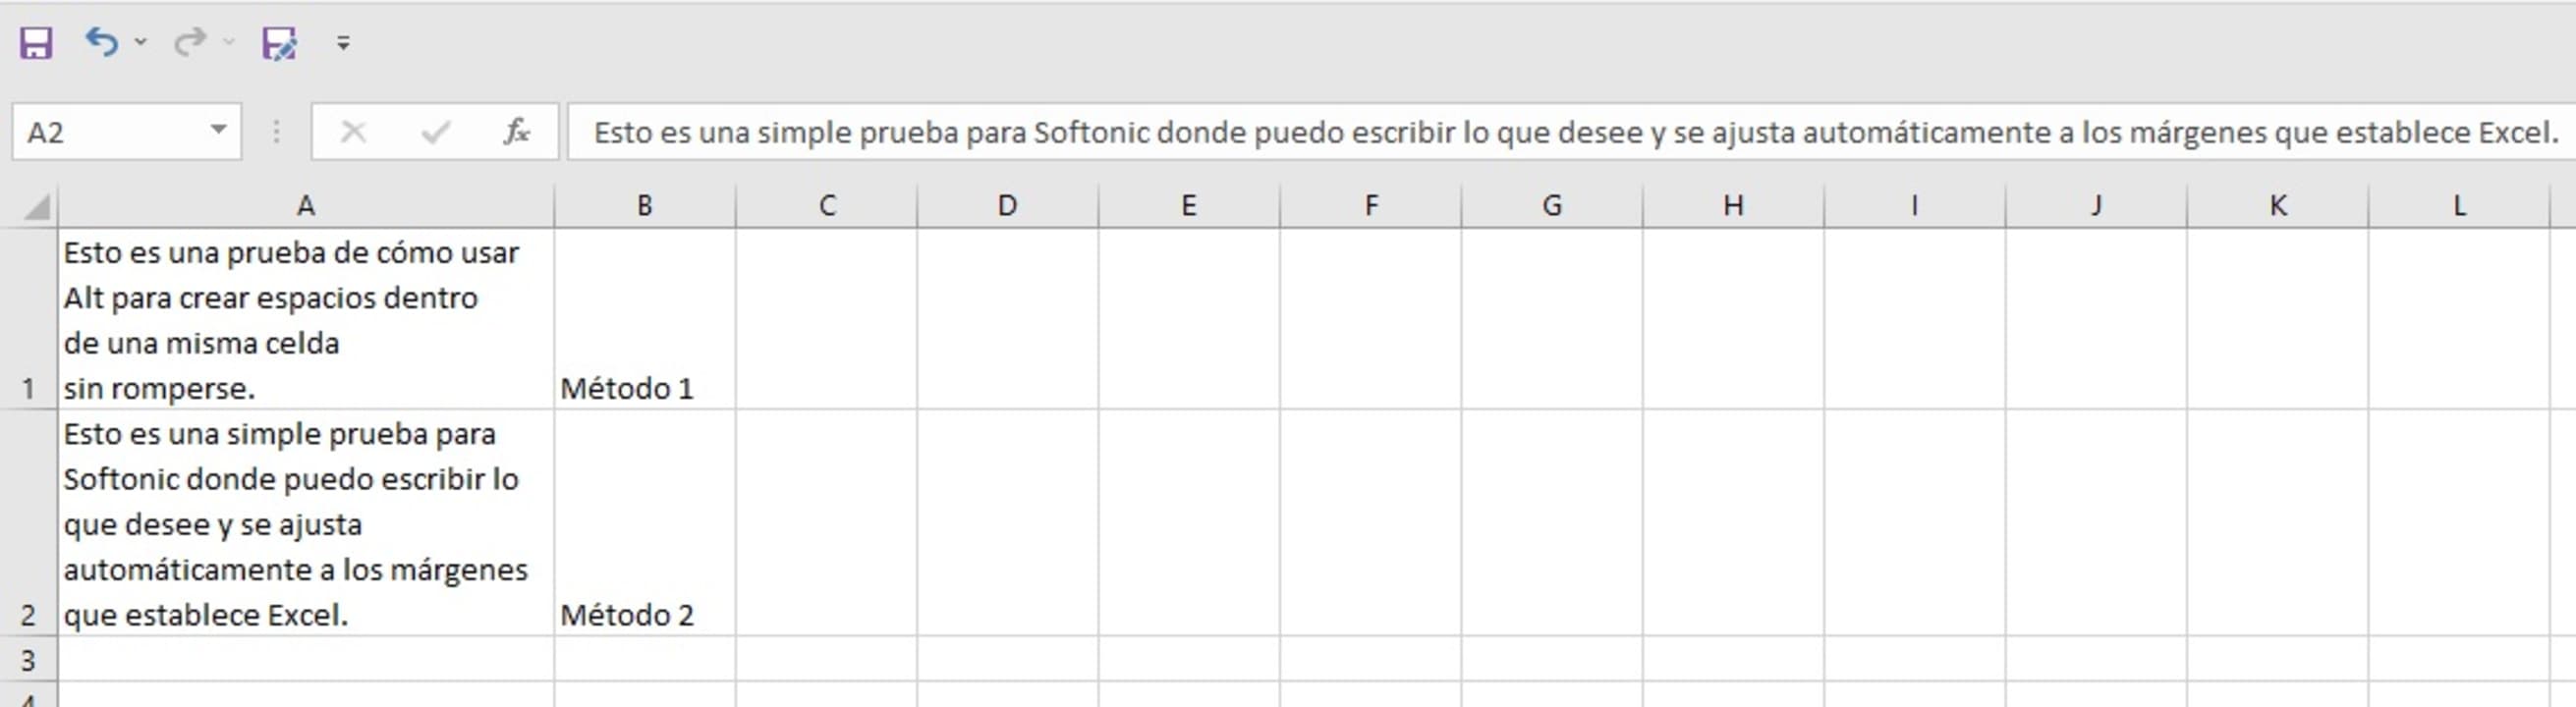 Como Escribir En Excel Cómo escribir texto en una sola celda de Excel - Softonic